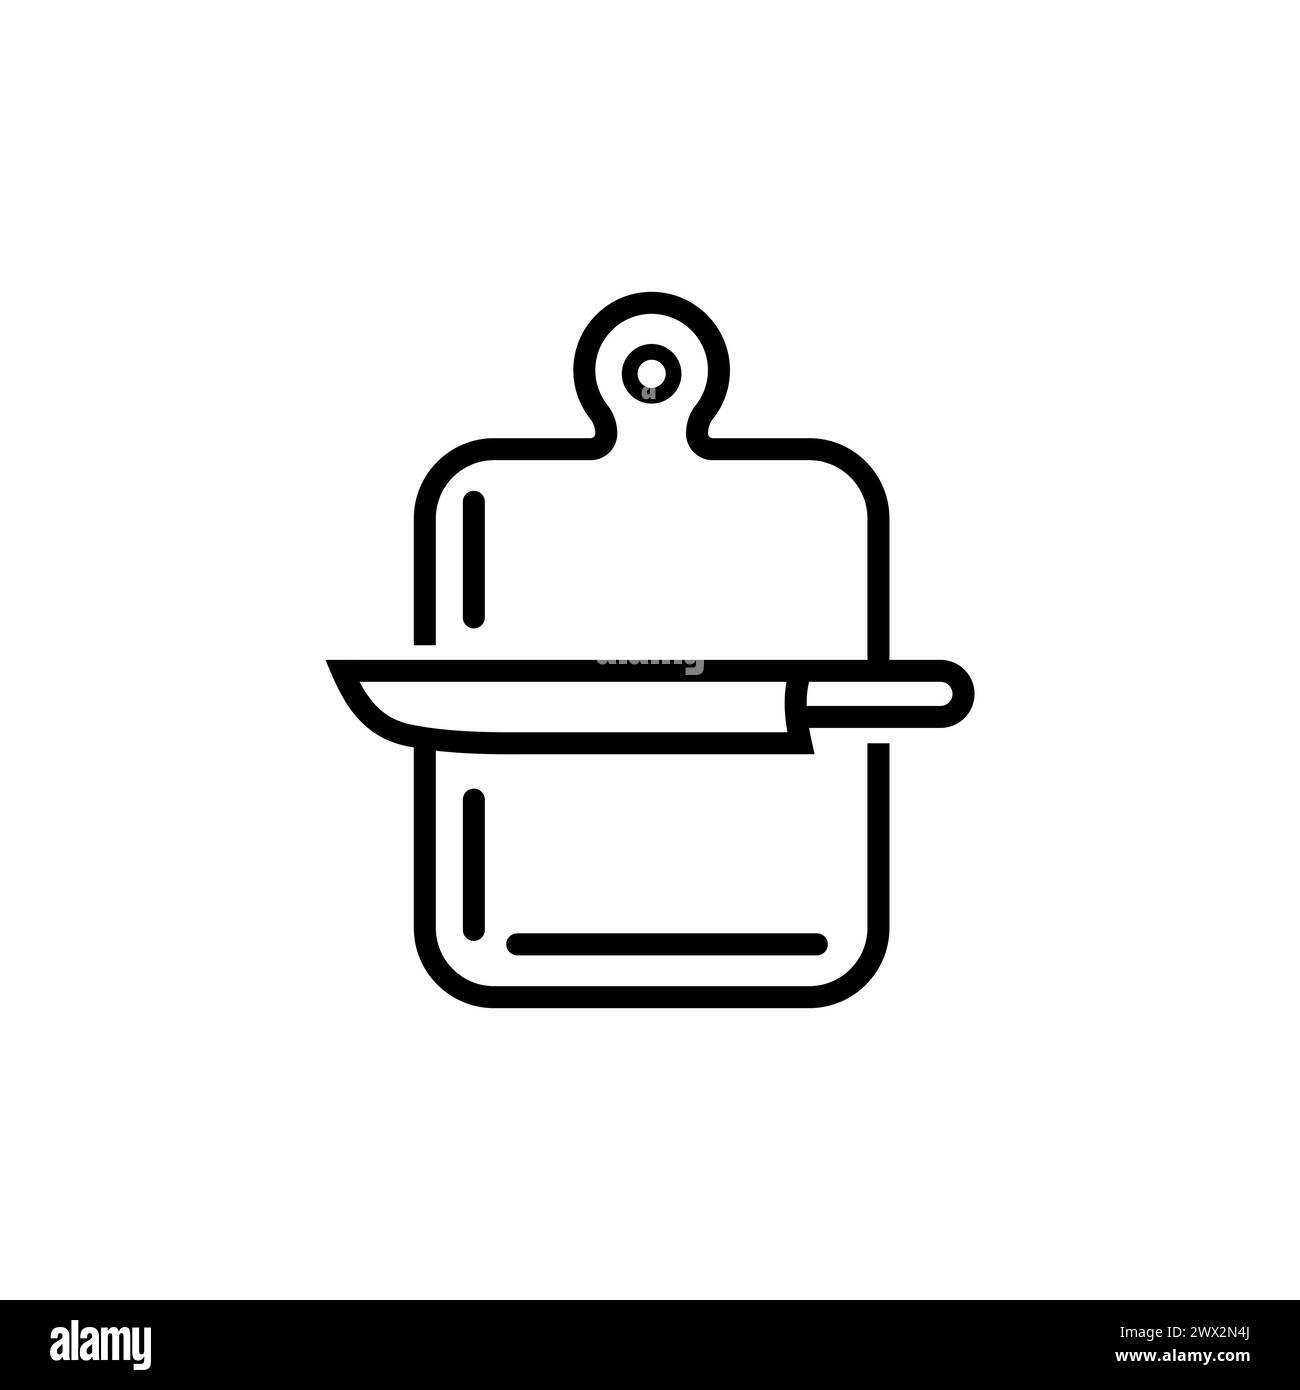 Kochen, Essen, Küchenschilder. Vektorsymbol im modernen Linienstil. Bearbeitbare Kontur. Liniensymbol für Messer und Schneidebrett Stock Vektor